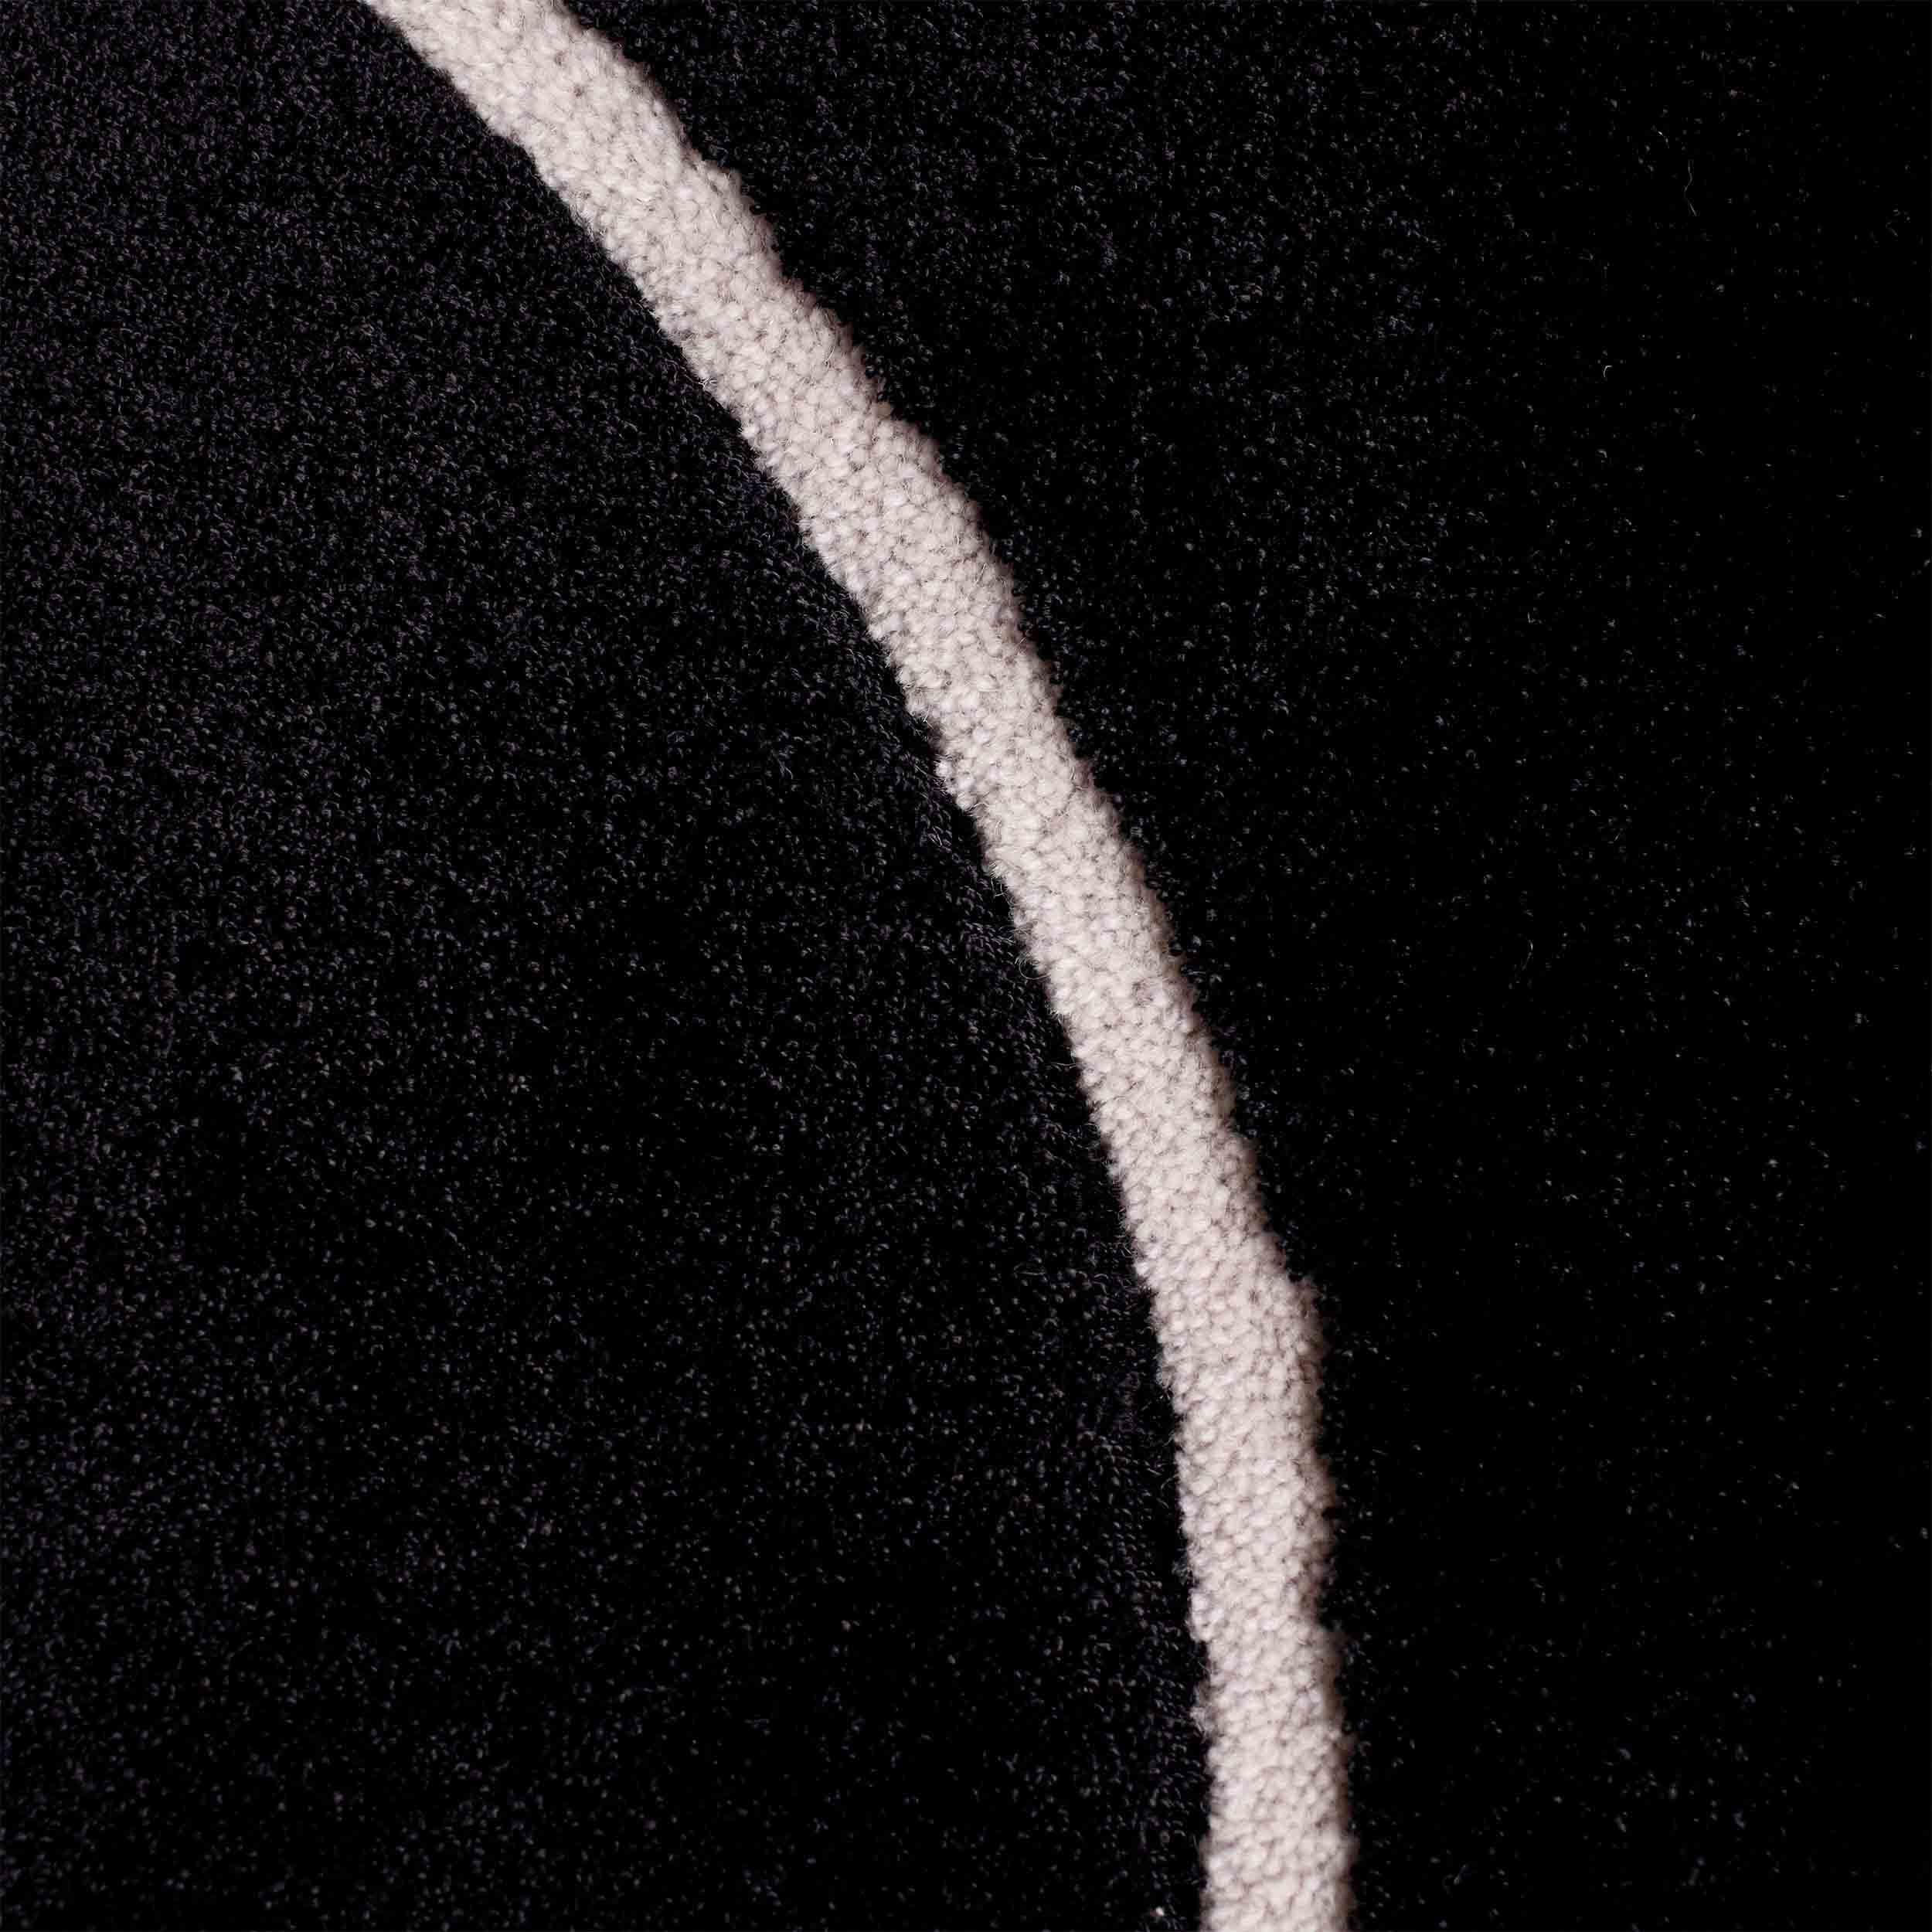 Midnight Black Squiggle présente une surface en viscose douce et brillante.

Taille : 8 x 11 ft 
MATERIAL : Viscose + laine
Couleur : Noir + Whiting*
Fabriqué en Suède

*Les couleurs peuvent varier en fonction de l'éclairage et de la photographie.